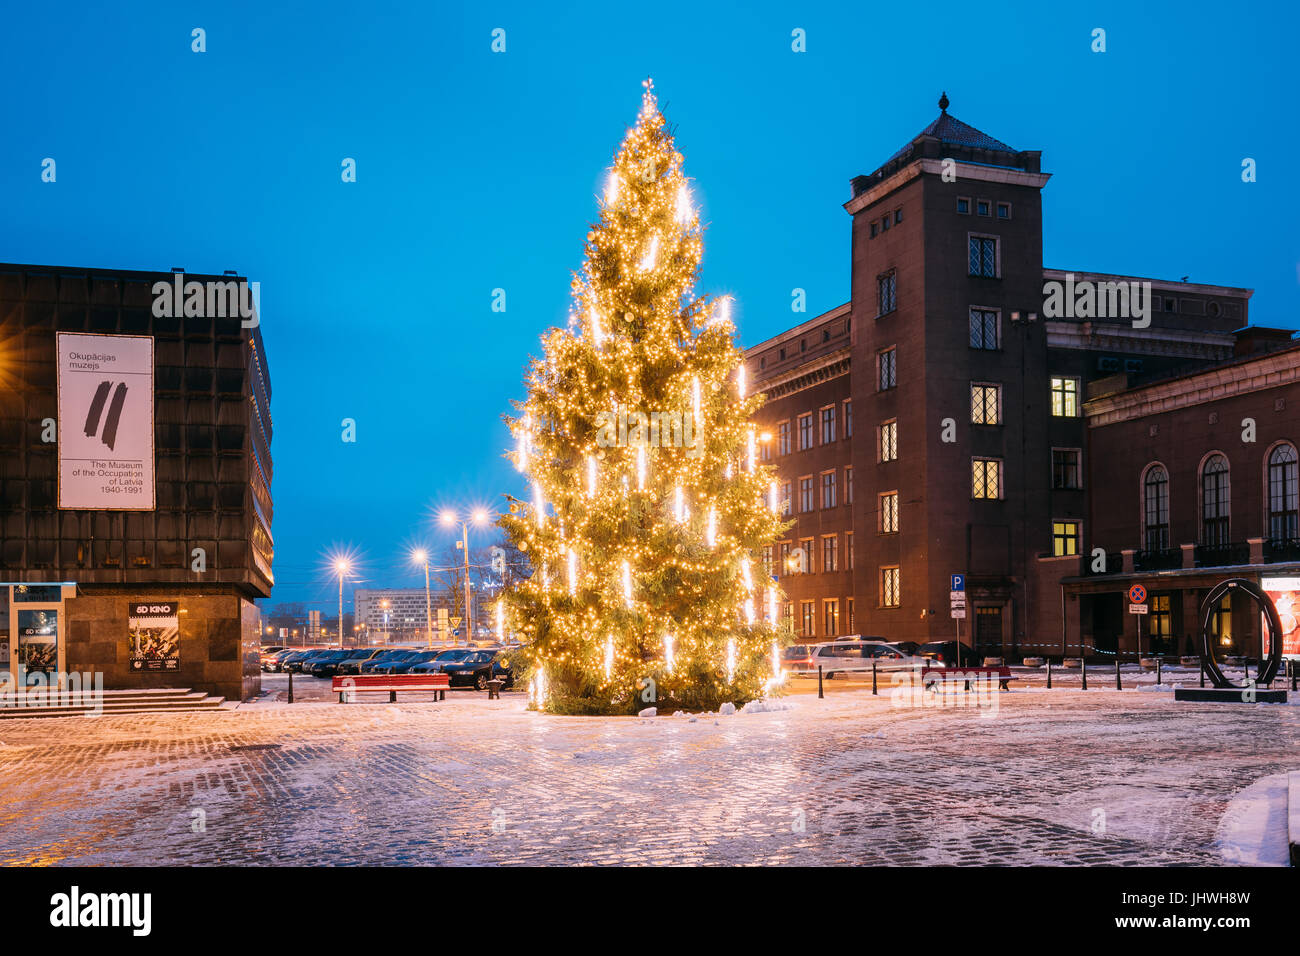 Riga, Lettland - 14. Dezember 2016: Winter Nachtansicht des Museums für die Besetzung von Lettland, Weihnachten Weihnachtsbaum und technische Universität Riga RTU bei Ev Stockfoto